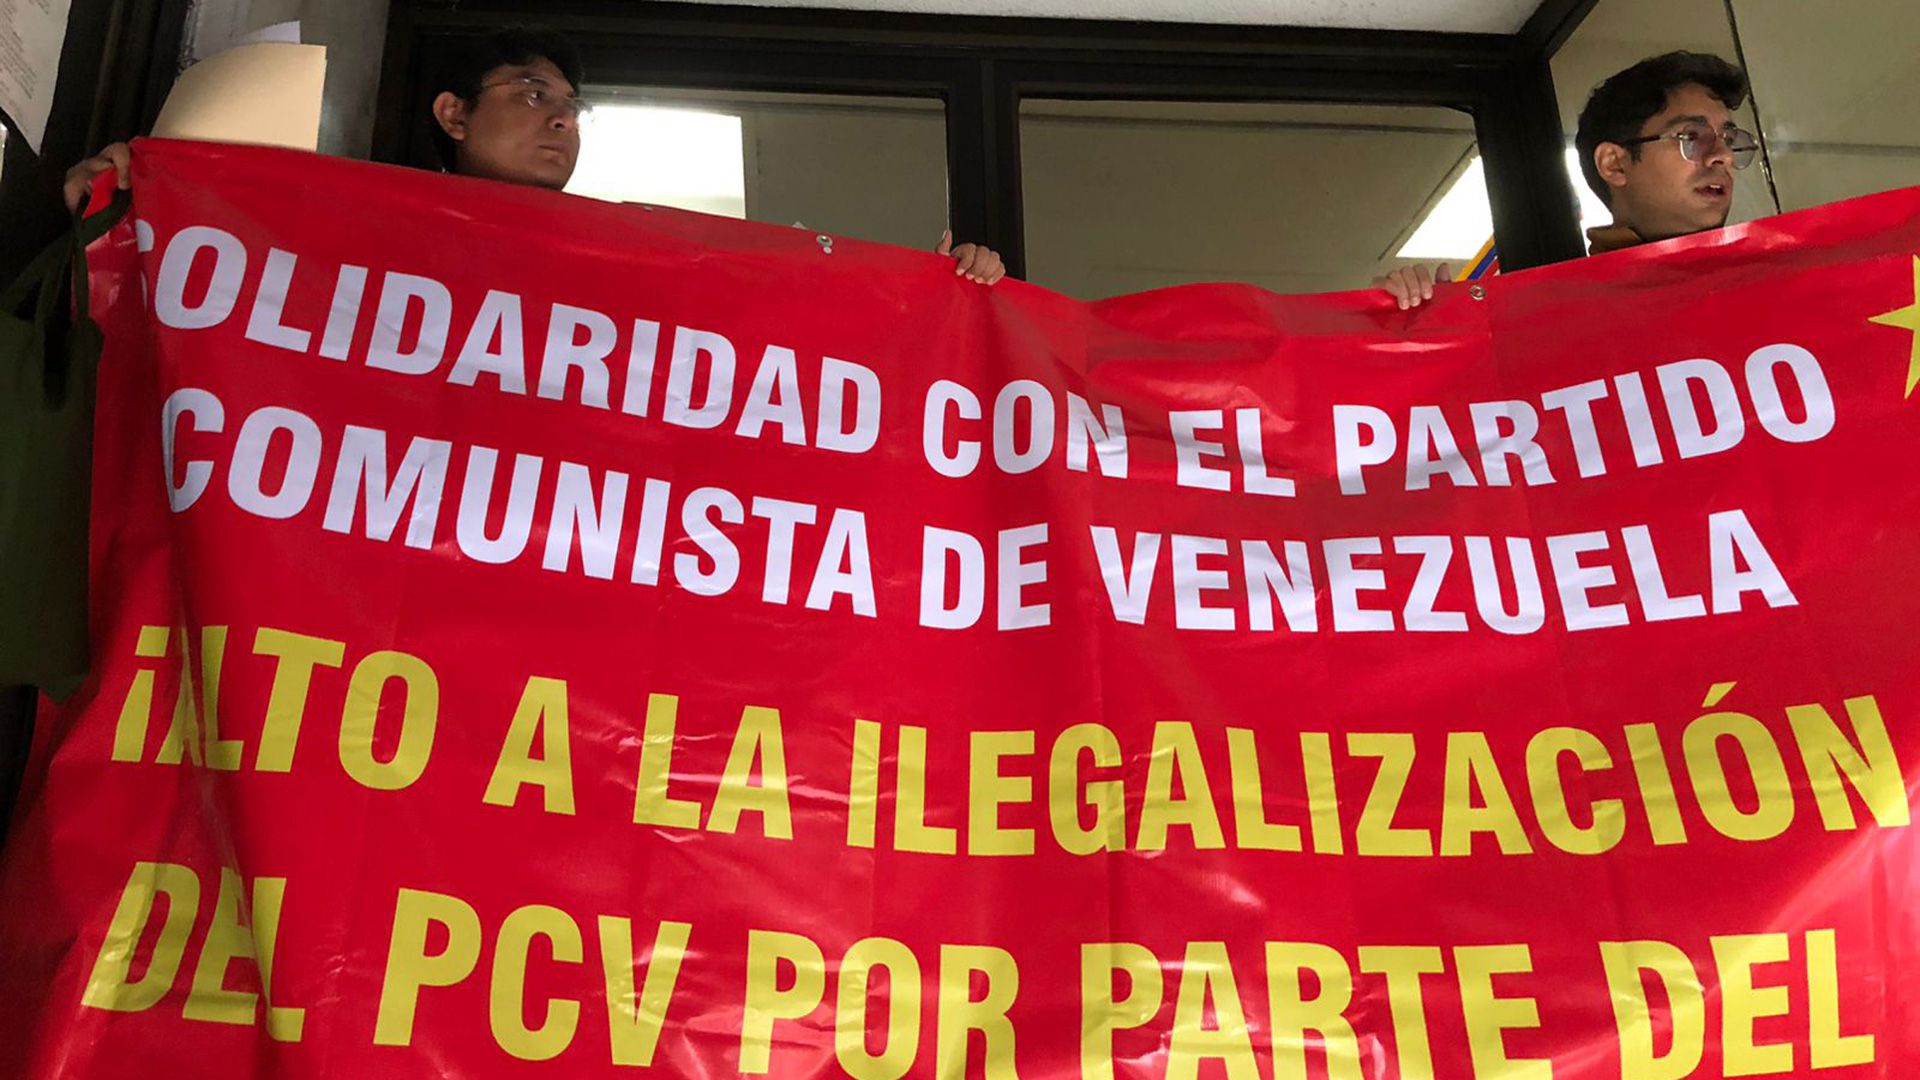 Activistas mexicanos se solidarizaron con el Partido Comunista de Venezuela, que fue ilegalizado por el régimen de Maduro